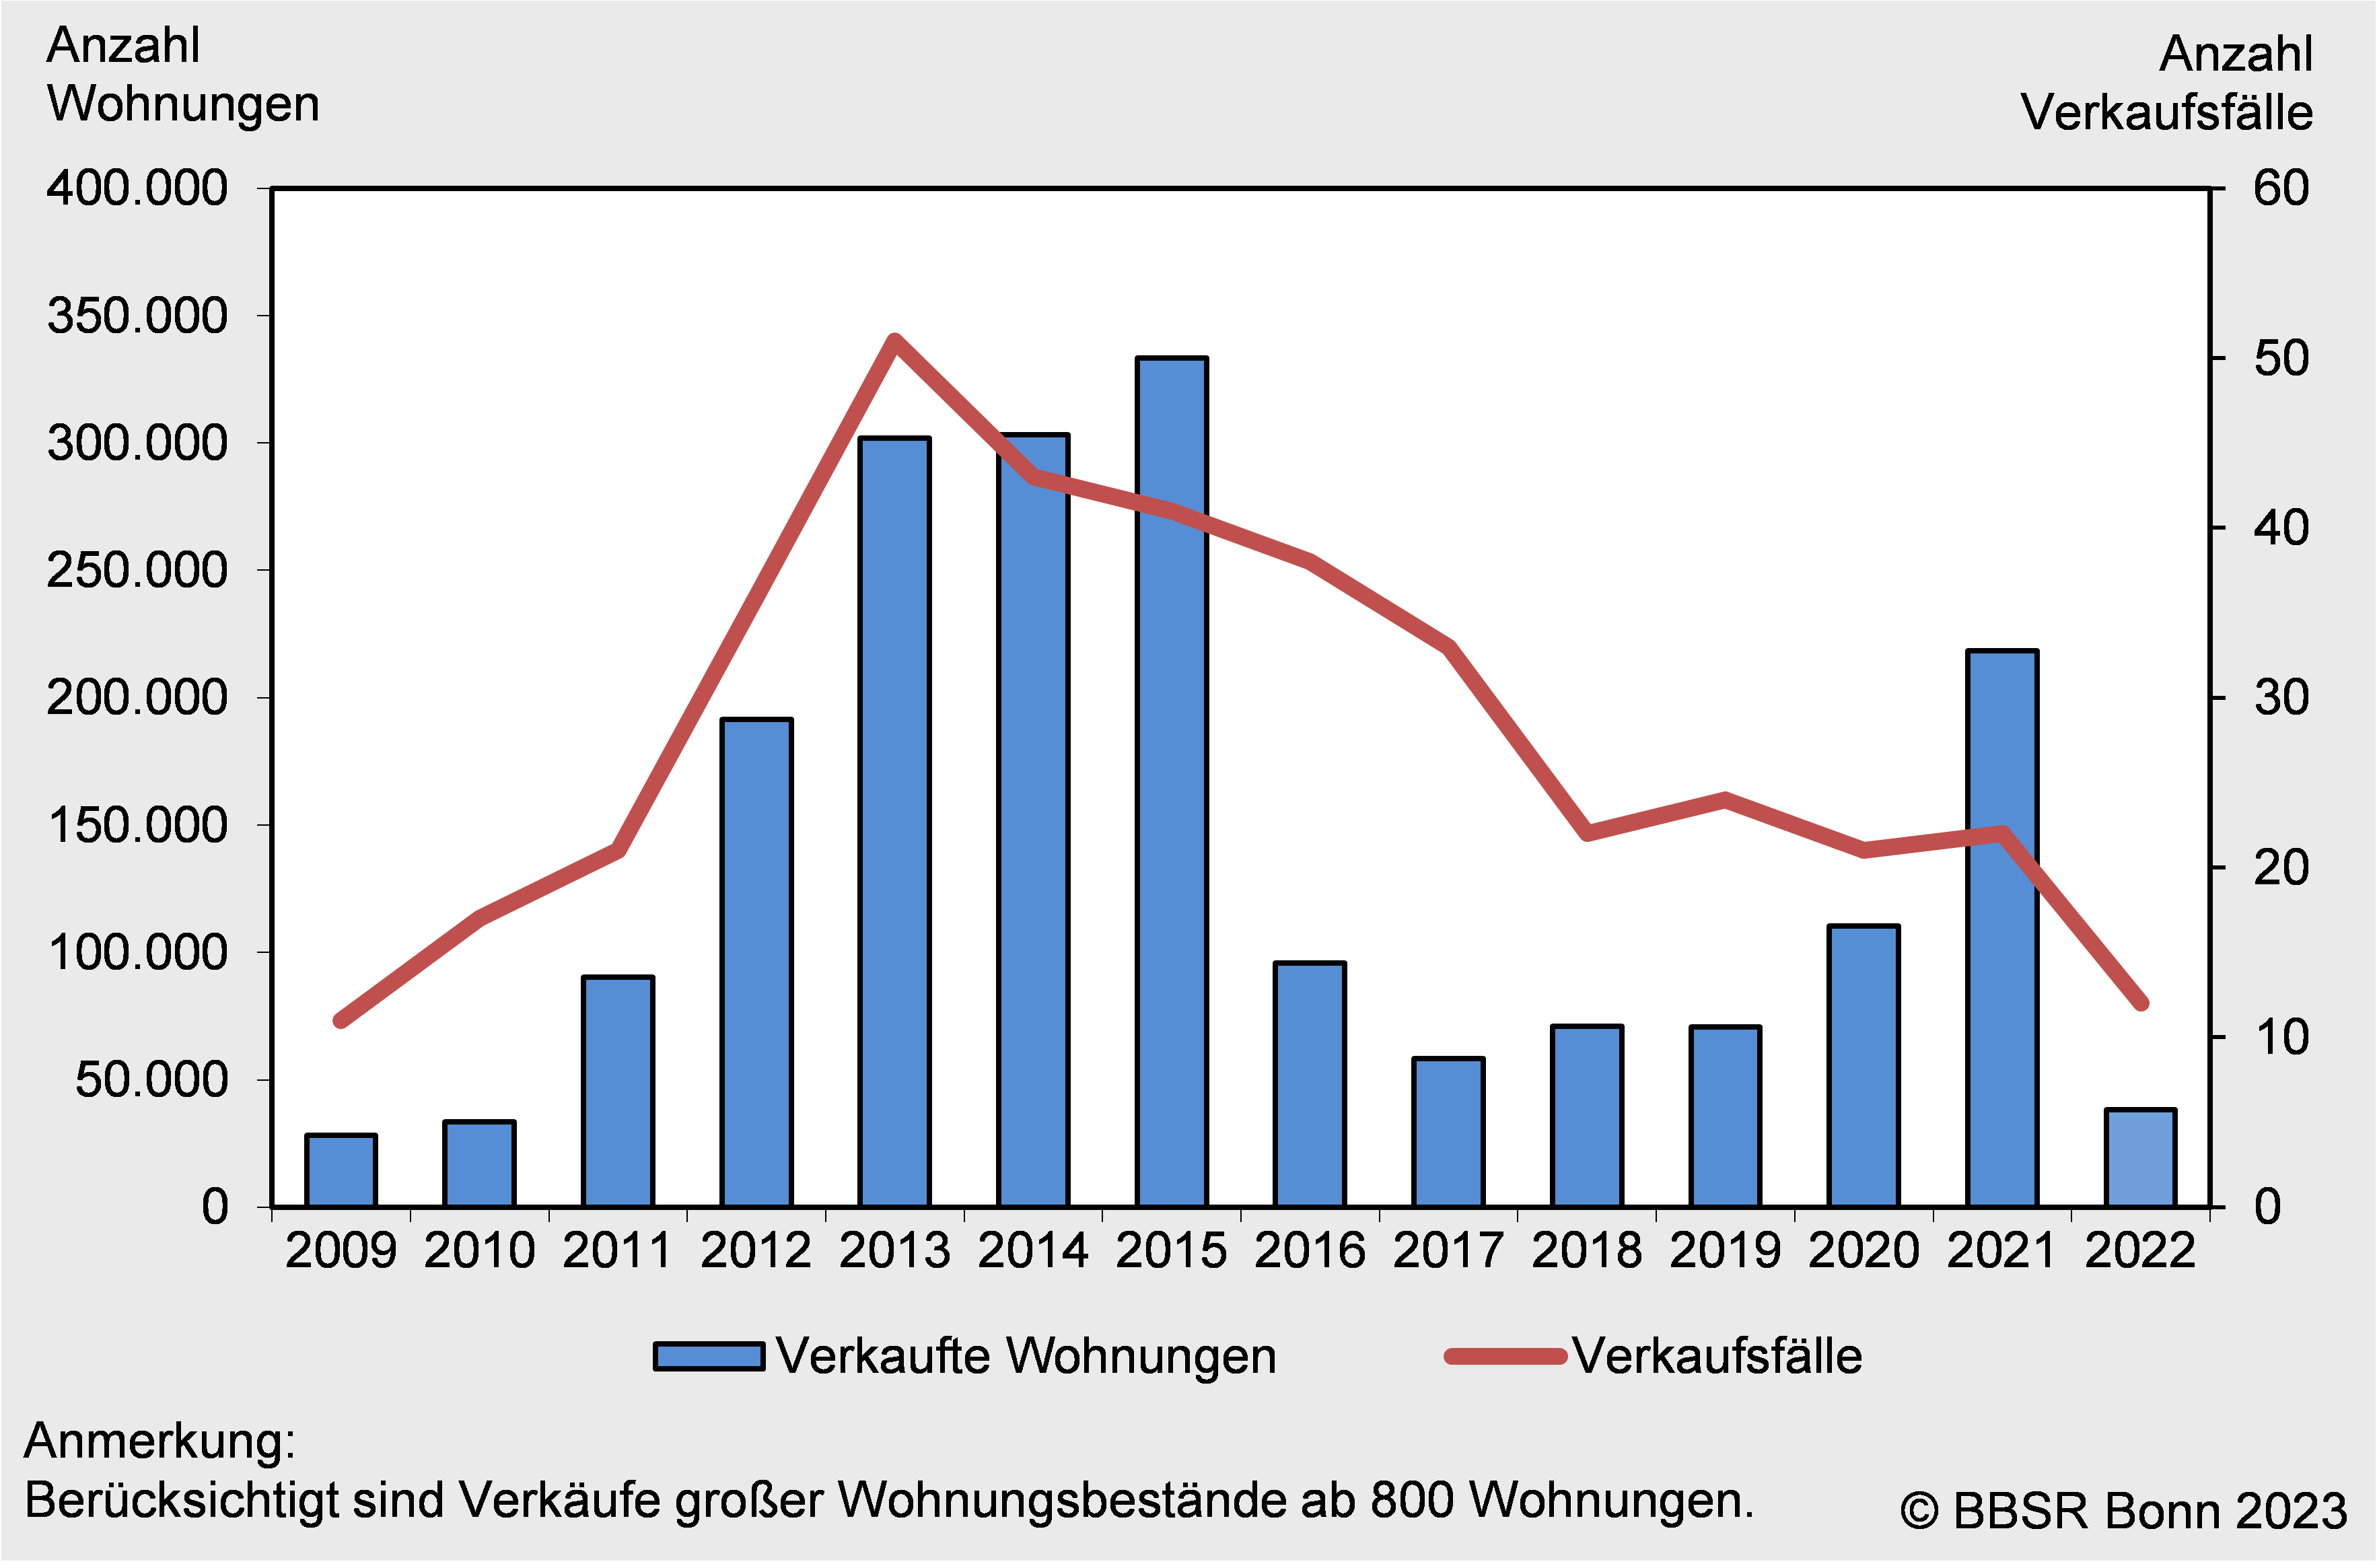 Verkaufte Wohnungen und Verkaufsfälle der BBSR-Datenbank Wohnungstransaktionen, 2009 bis 2022. Quelle: BBSR 